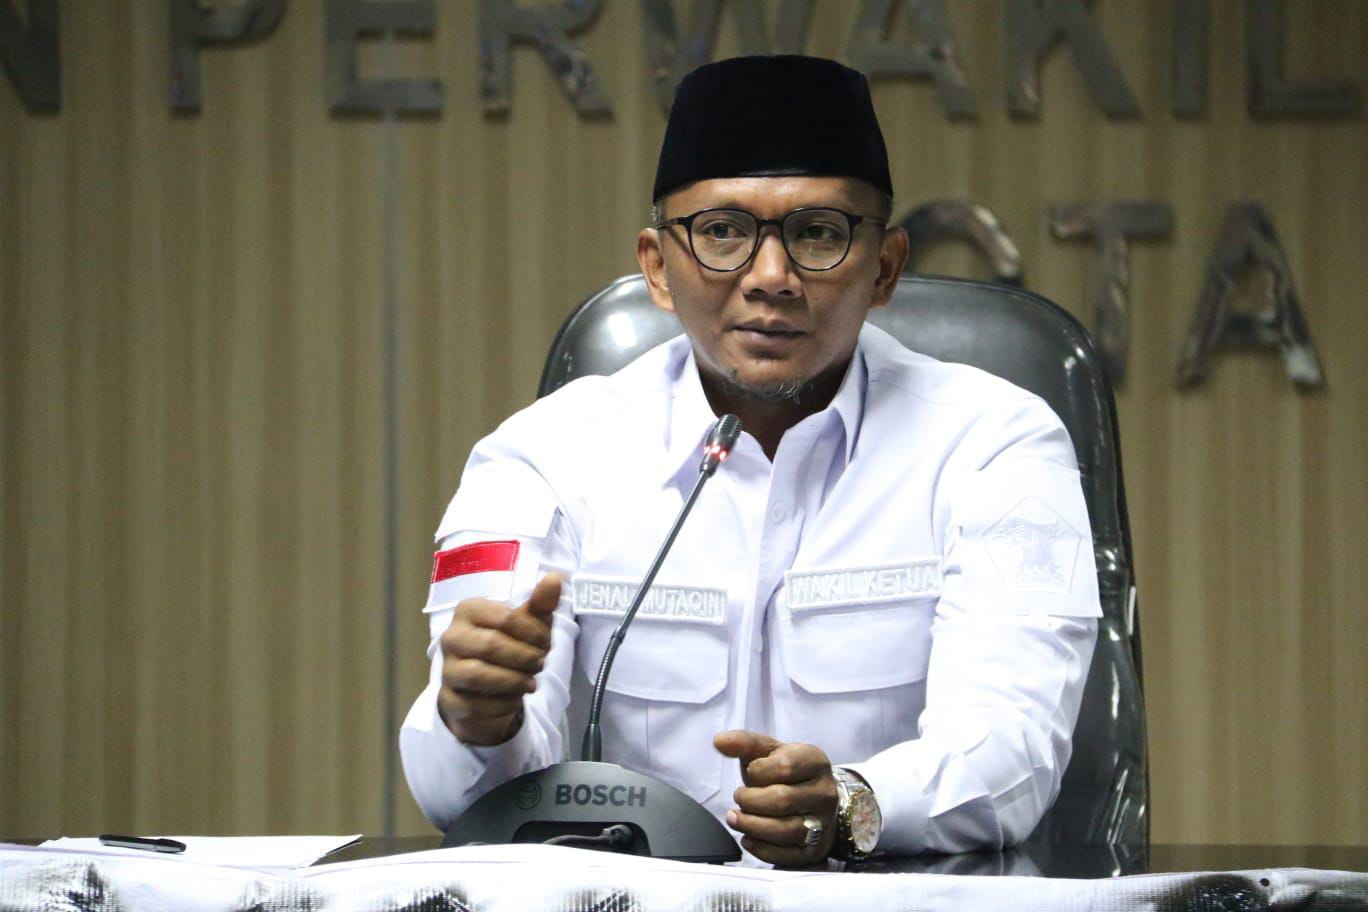 Wakil Ketua I DPRD Kota Bogor, Jenal Mutaqin, komentari kelas olahraga yang akan dihapuskan di SMPN 3 Kota Bogor.